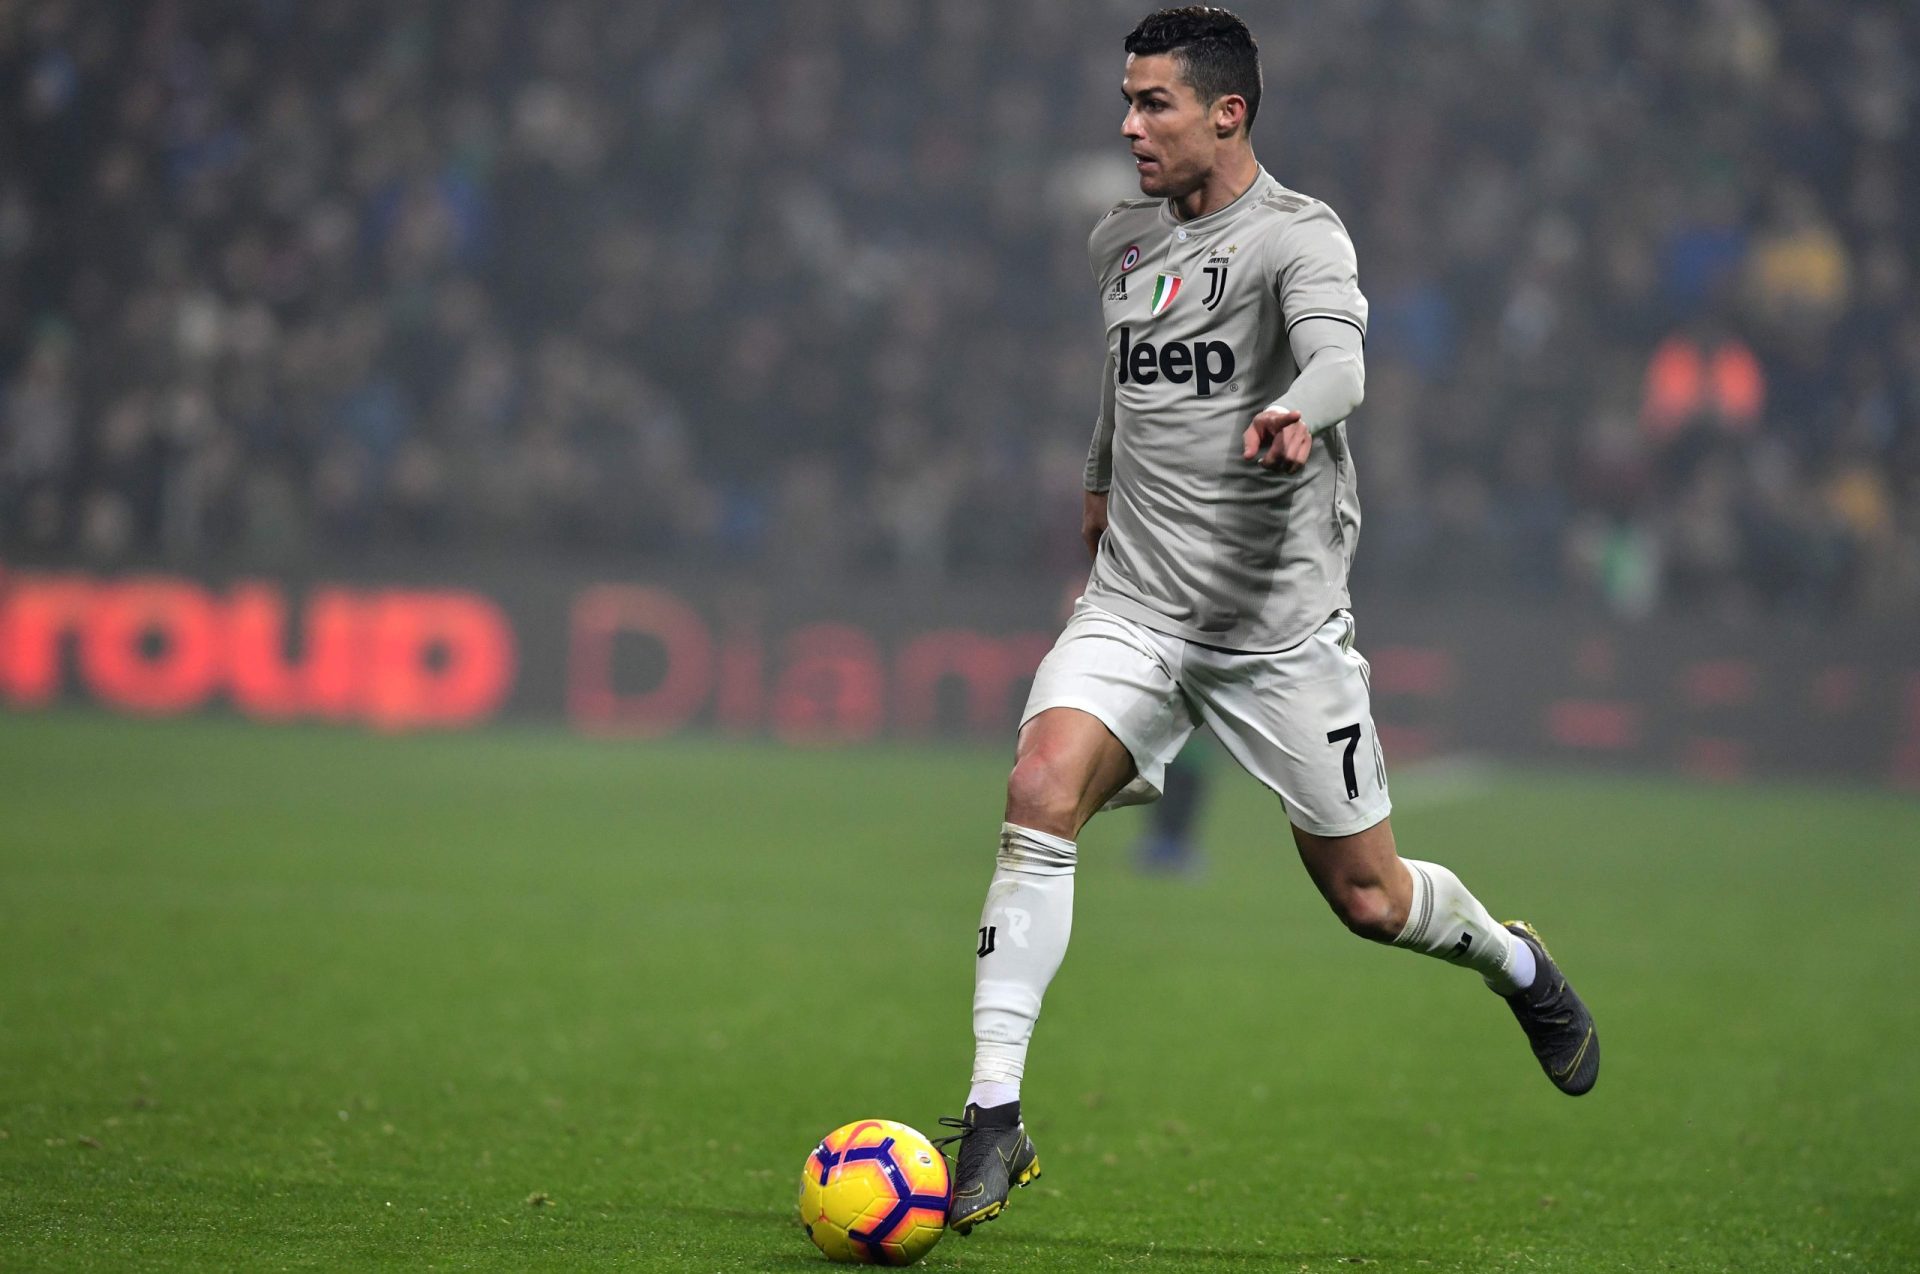 Há um novo cântico dos adeptos para Ronaldo: “Cristiano da Madeira” | Vídeo